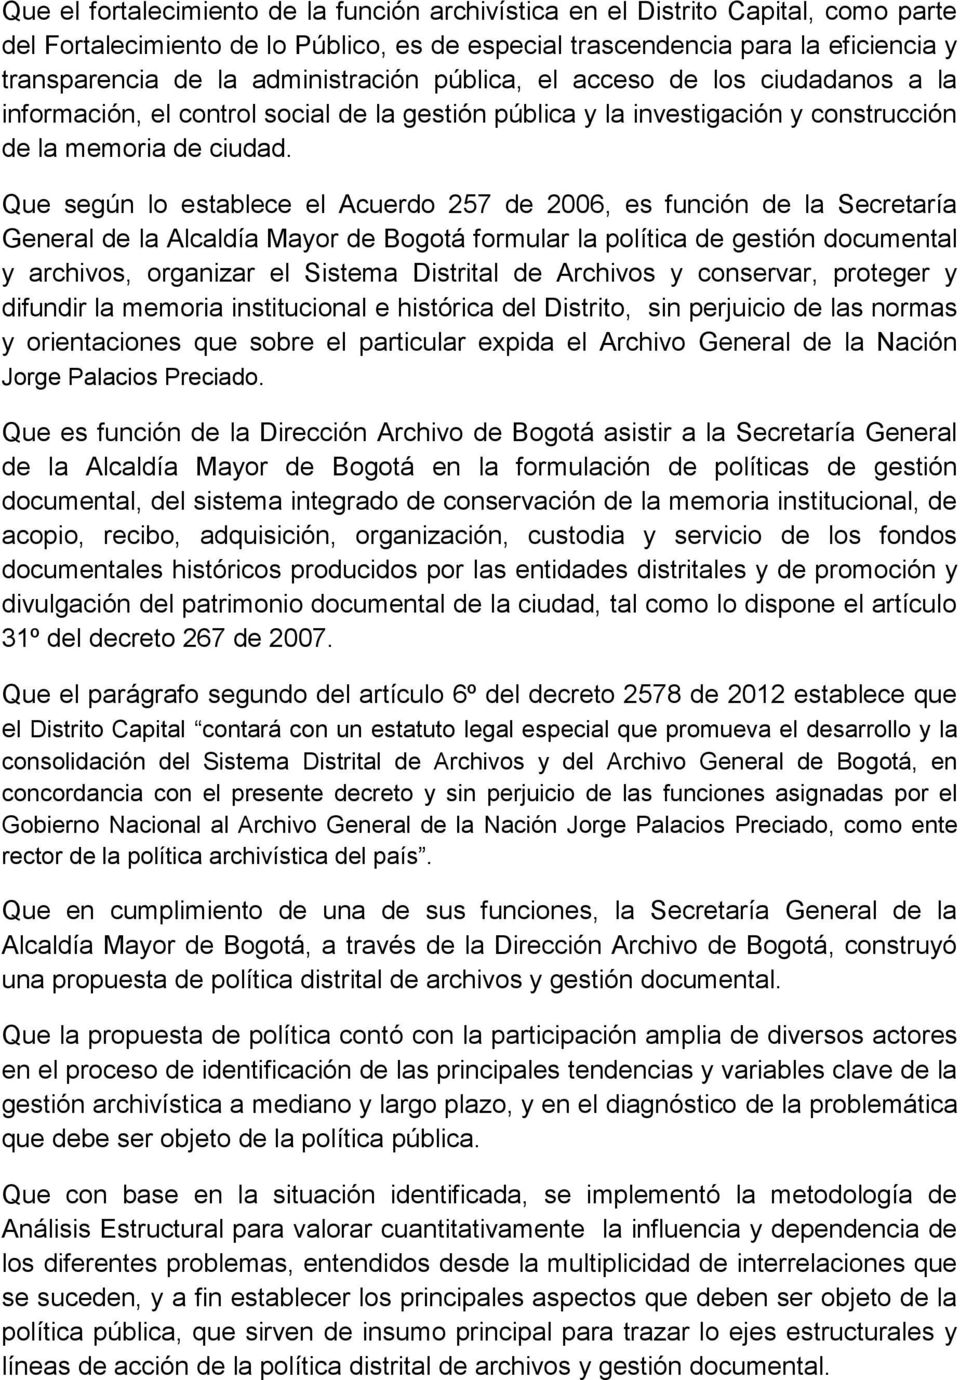 Que según lo establece el Acuerdo 257 de 2006, es función de la Secretaría General de la Alcaldía Mayor de Bogotá formular la política de gestión documental y archivos, organizar el Sistema Distrital